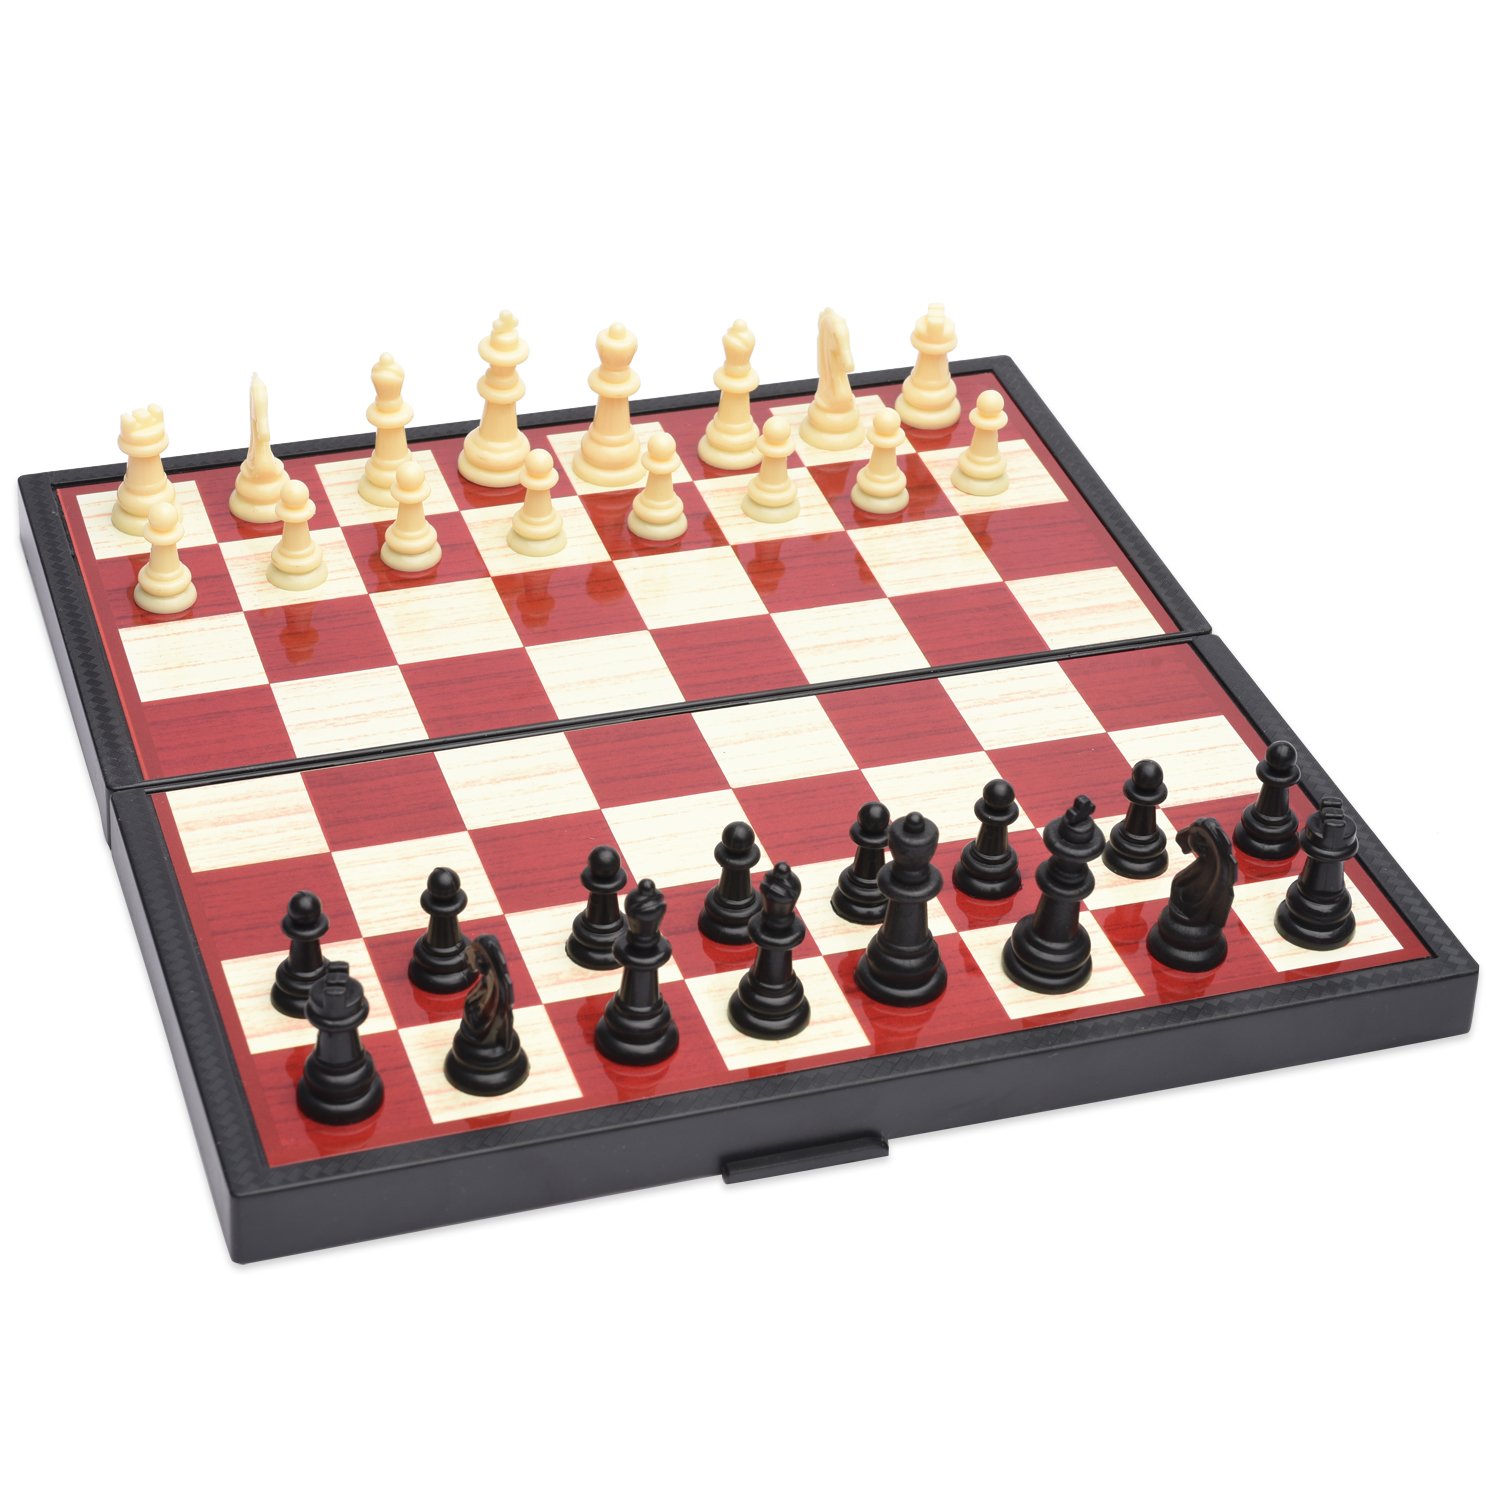 Игра магнитная 5 в 1 шашки шахматы нарды карты Домино 1toy, т12060. Игра магнитная 5 в 1 «шашки, шахматы, нарды, карты, Домино»,. Набор настольный игр "5в1":шашки и шахматы, нарды, карты Домино. Шахматы шашки Домино.